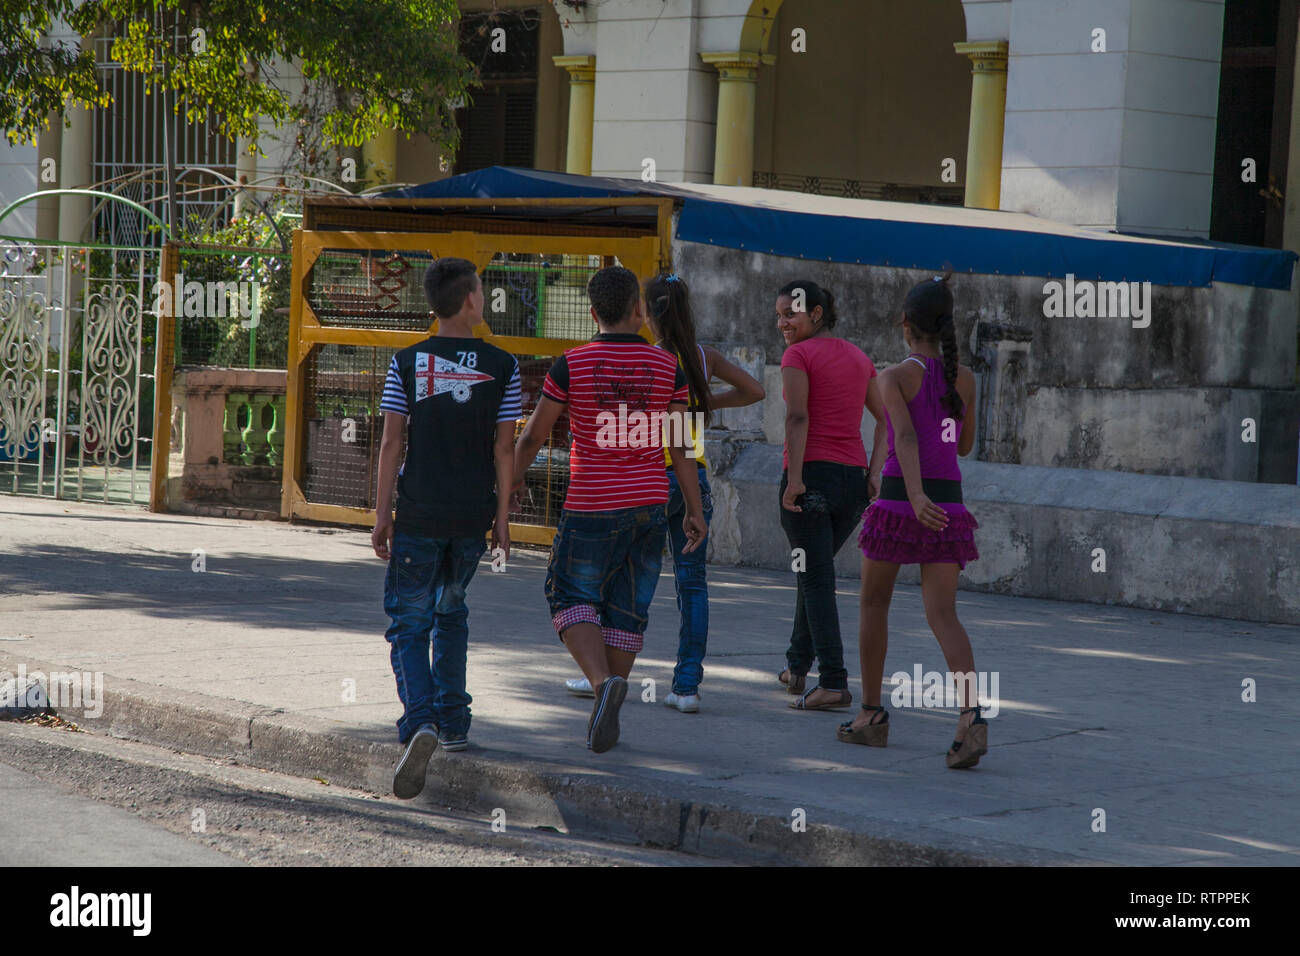 Havanna, Kuba - 12. Januar 2013: Ein Blick auf die Straßen der Stadt mit dem kubanischen Volk. Jugendliche gehen lachend auf der anderen Straßenseite. Stockfoto